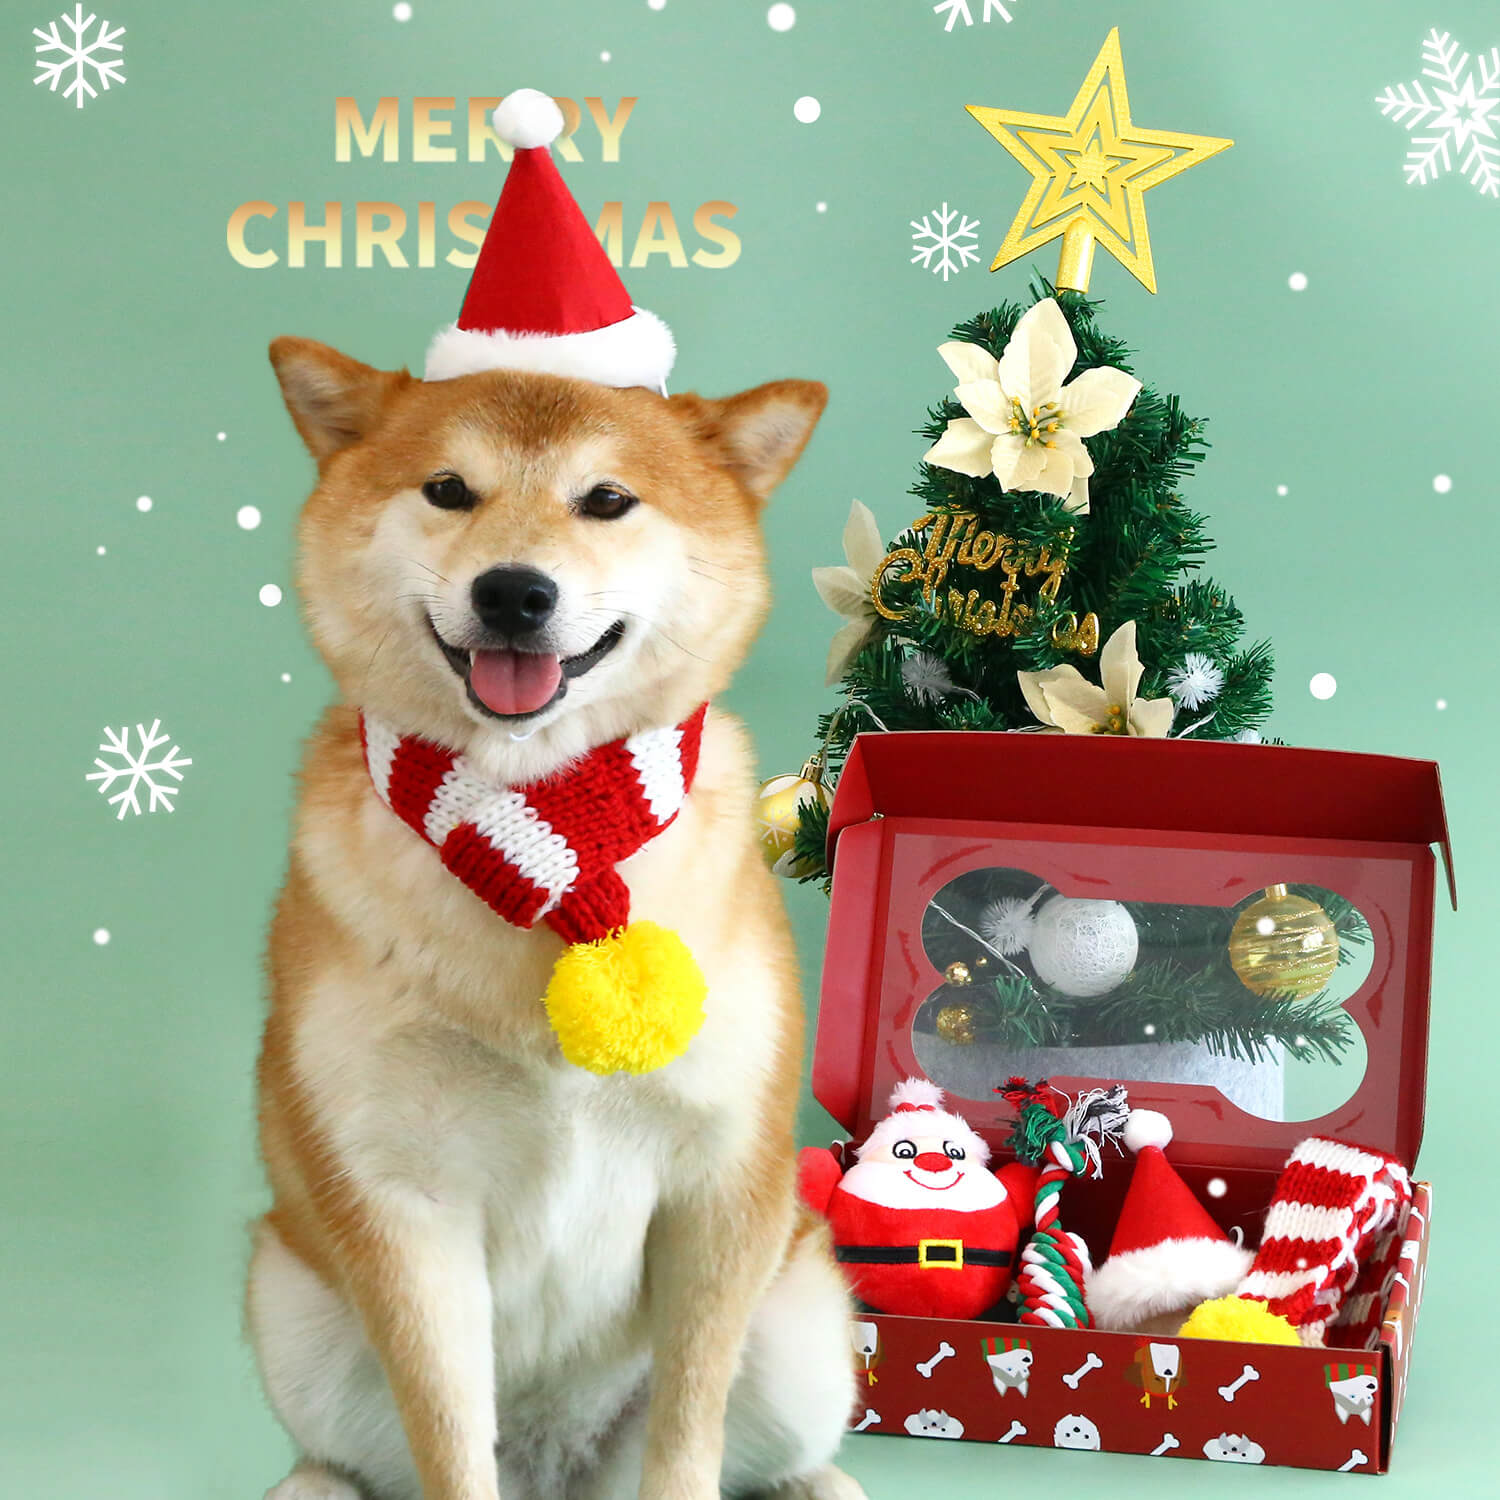 Divertente set da gioco natalizio per cagnolini con cappello, sciarpa e giocattolo